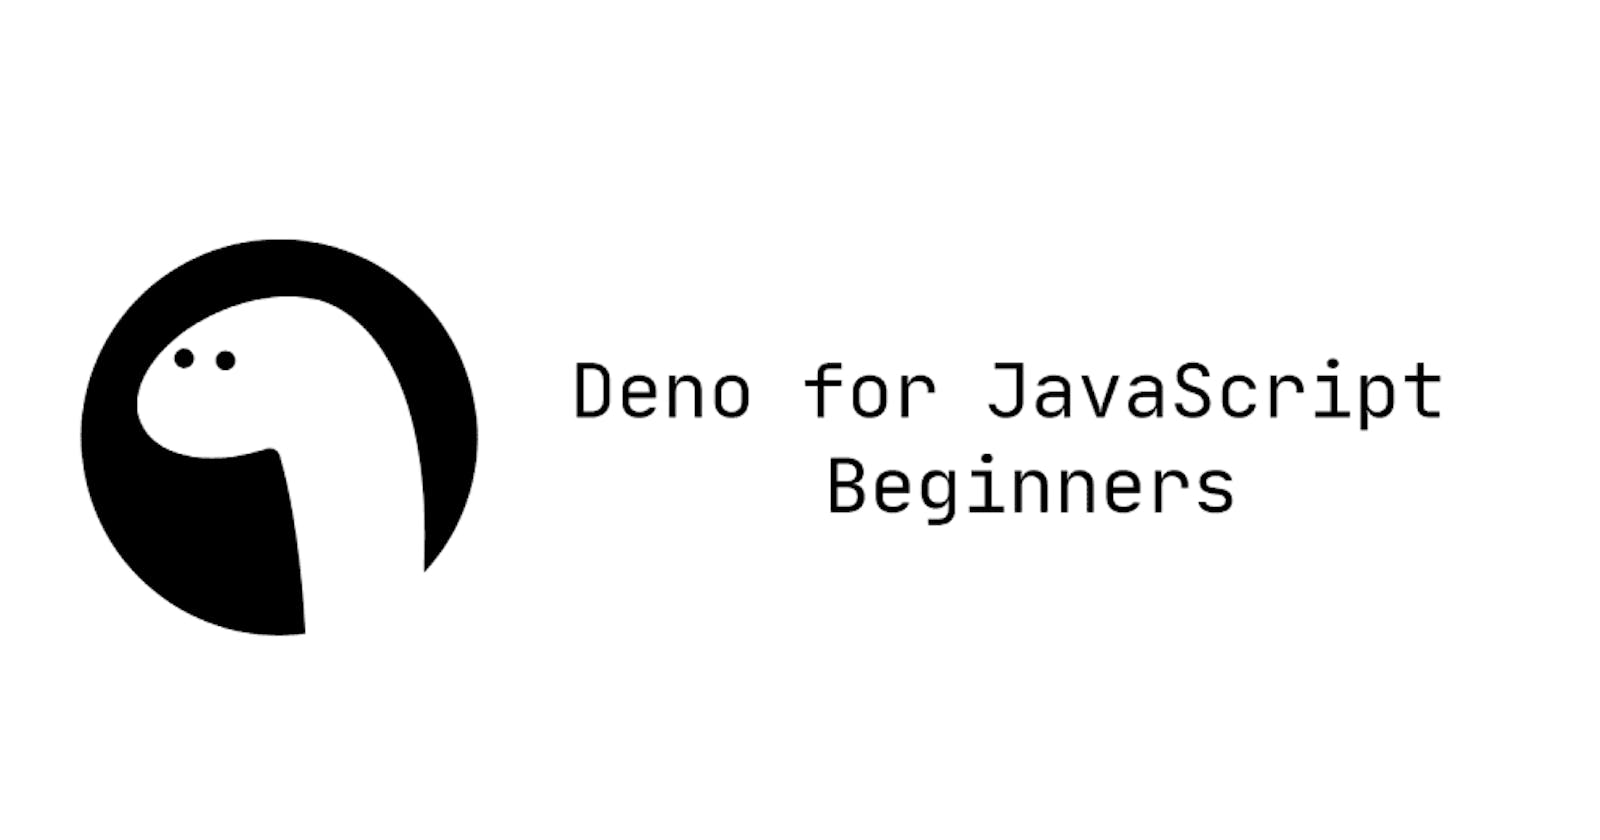 Deno for JavaScript Beginners